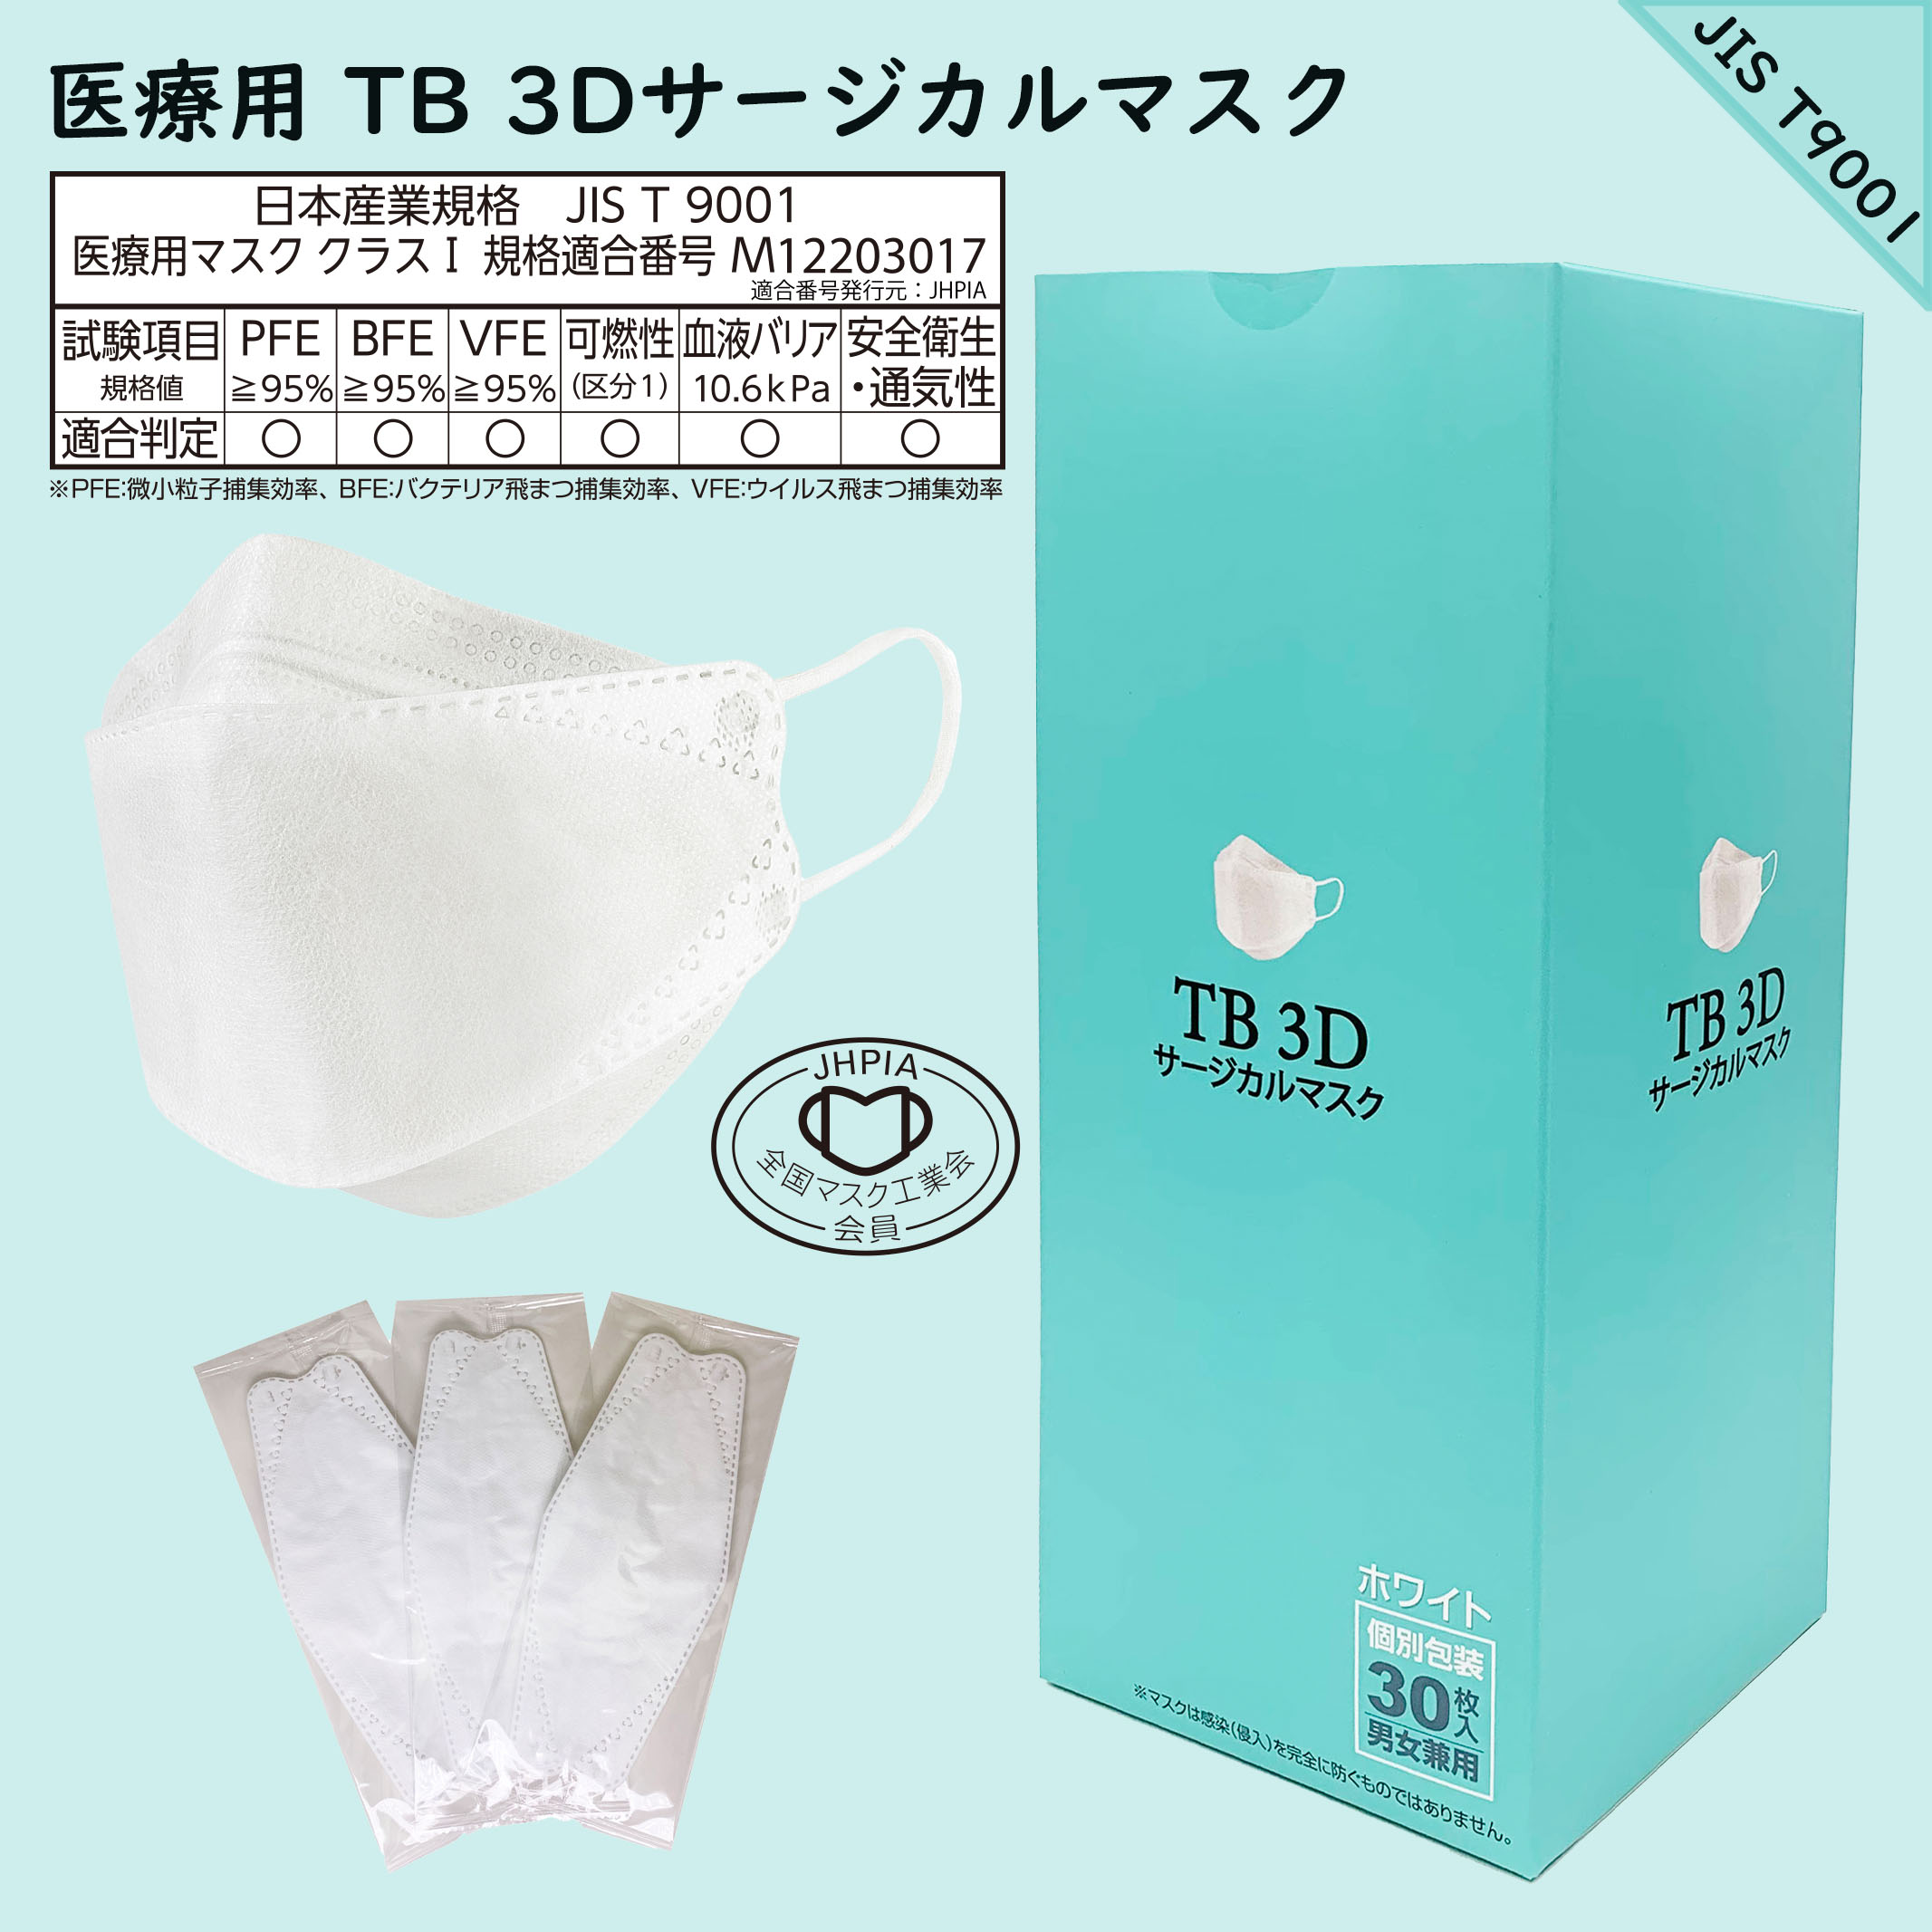 つばさ(Tsubasa) TB 3Dサージカルマスク・個包装・3層構造 (JIS T9001適合審査合格品) 医療用立体マスク ホワイト/フリーサイズ 1BOX-30枚入り